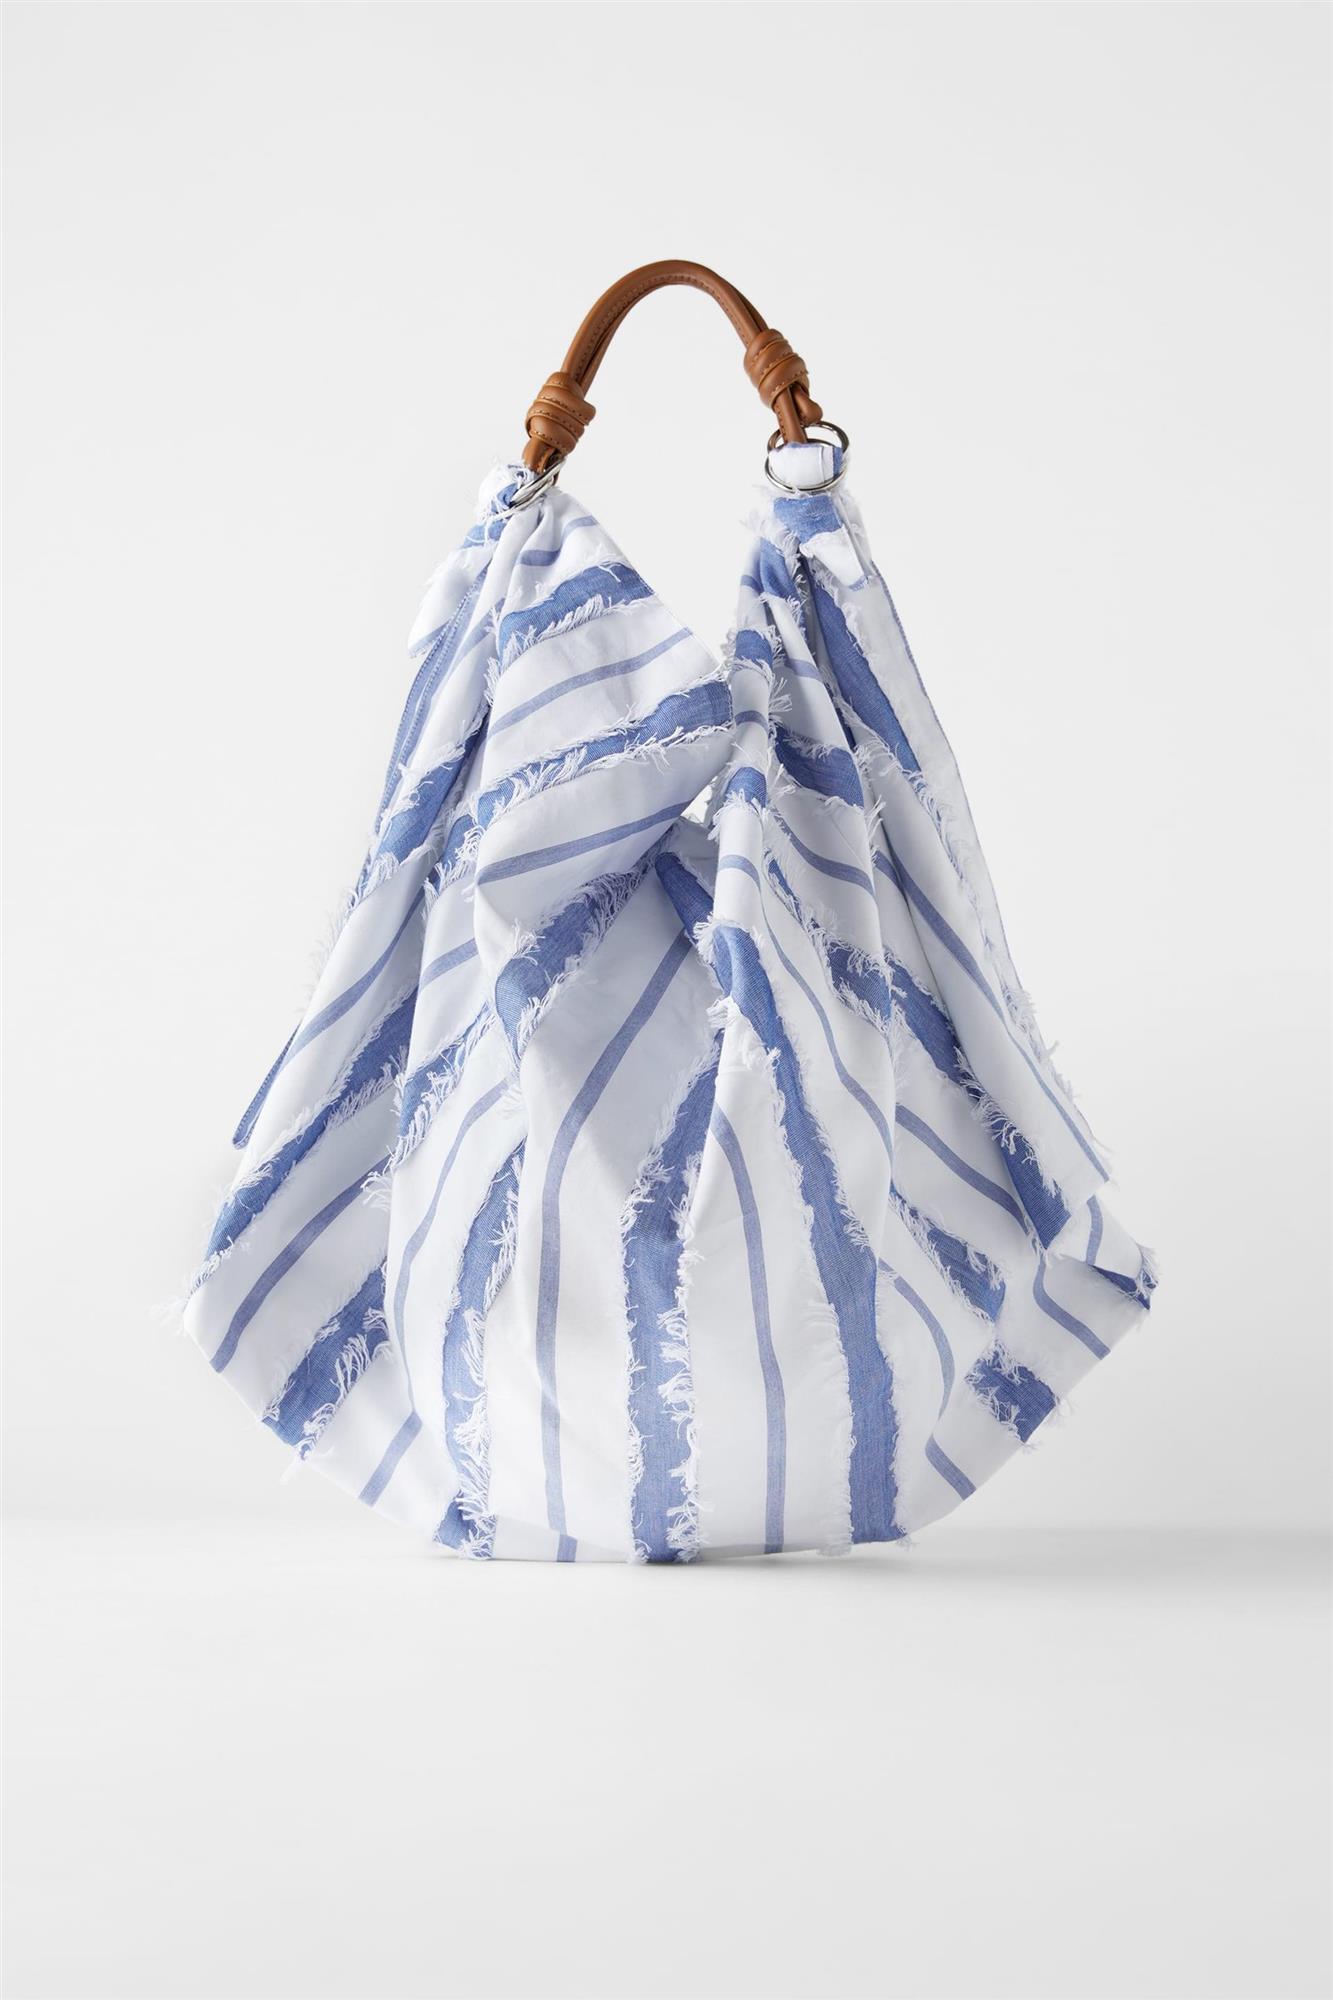 Bolsa de tela en blanco y azul con asas de cuero, de Zara